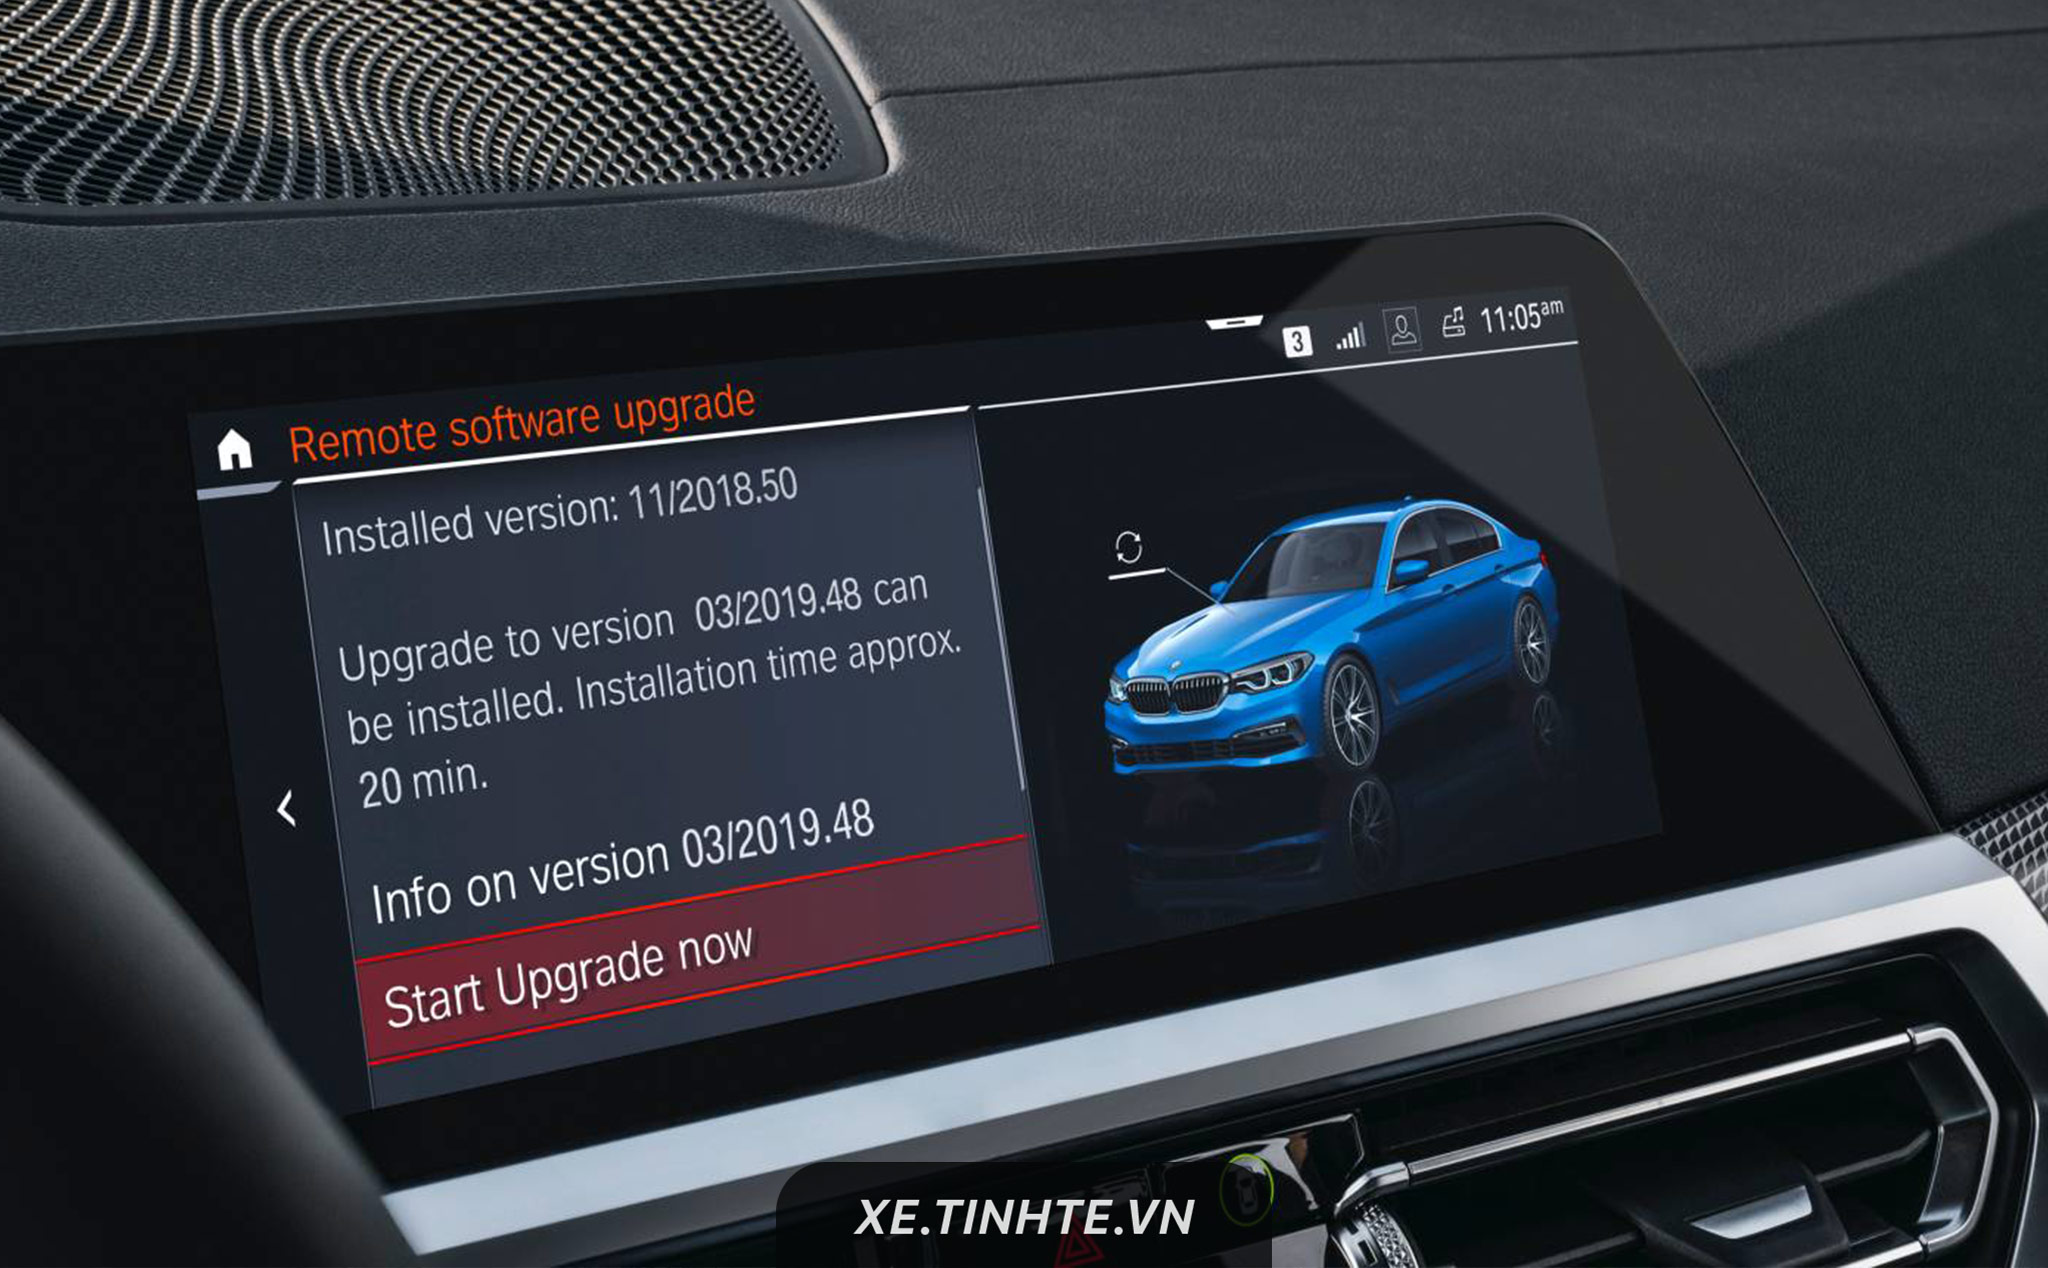 Hệ điều hành 7.0 của xe BMW có thể cập nhật online, thêm tính năng mới, có trợ lý ảo thông minh